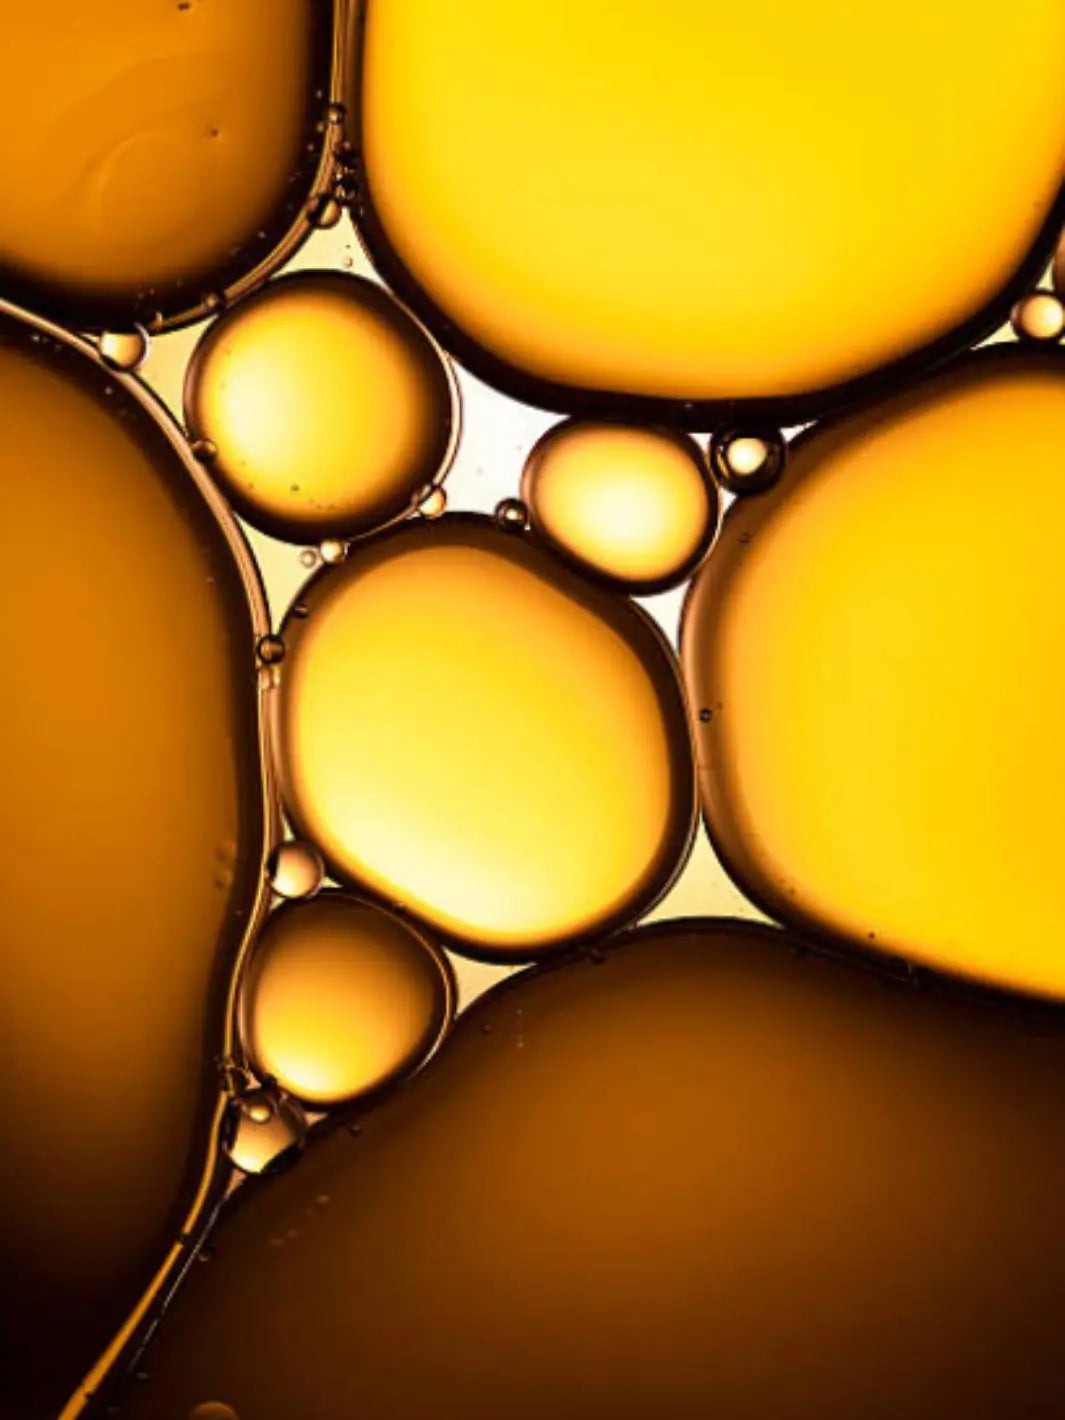 La texture de l'huile solaire permet une sensorialité avec les ingrédients actif